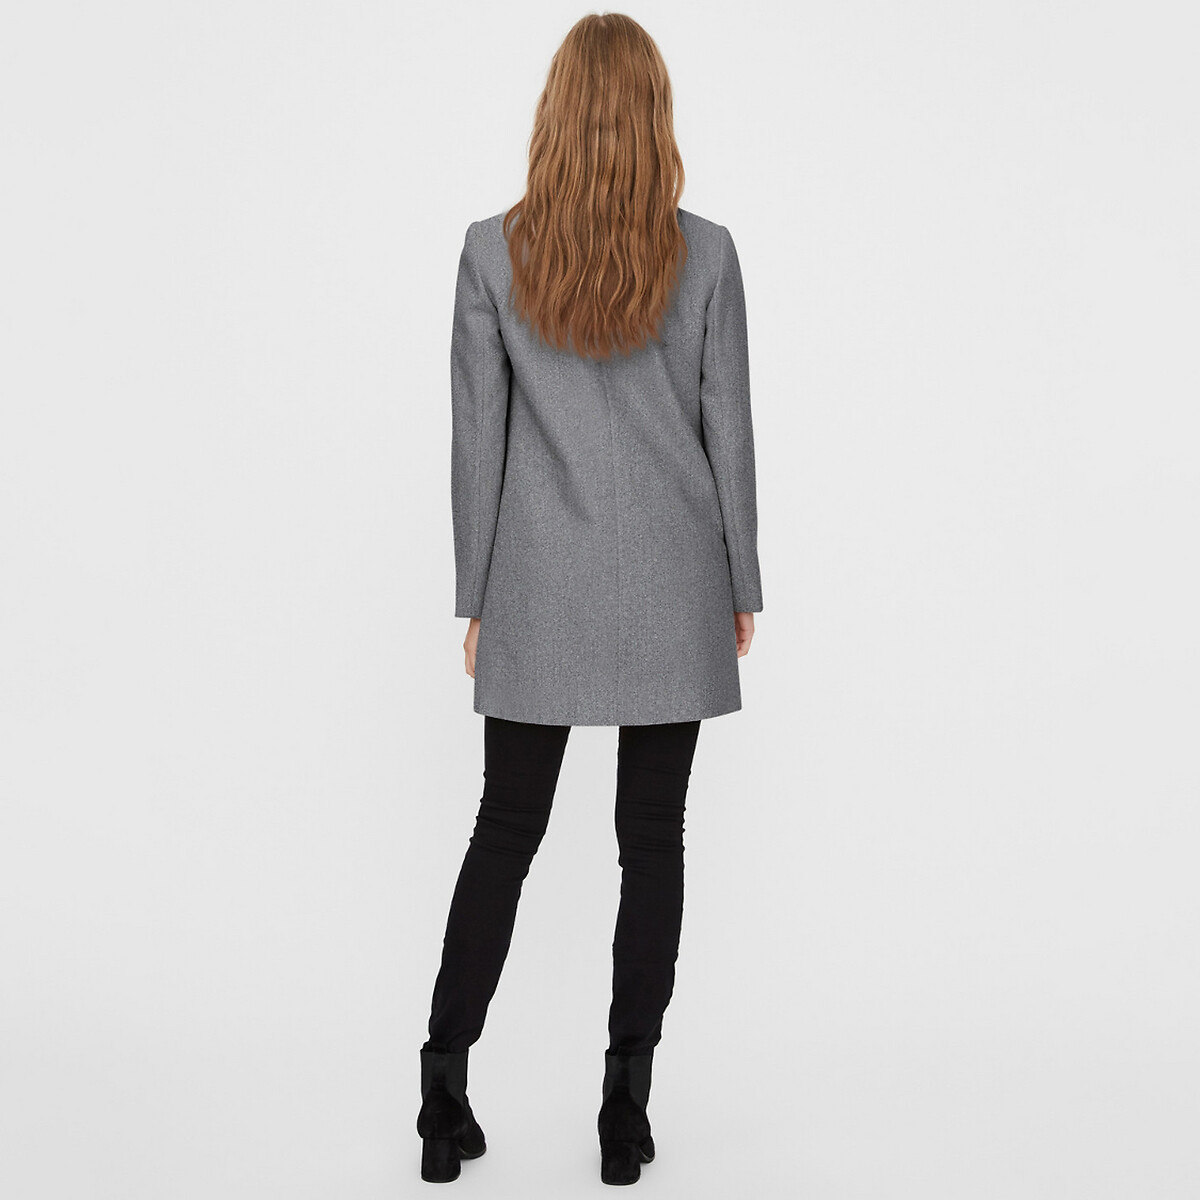 Пальто La Redoute Средней длины на пуговицах M серый, размер M - фото 3